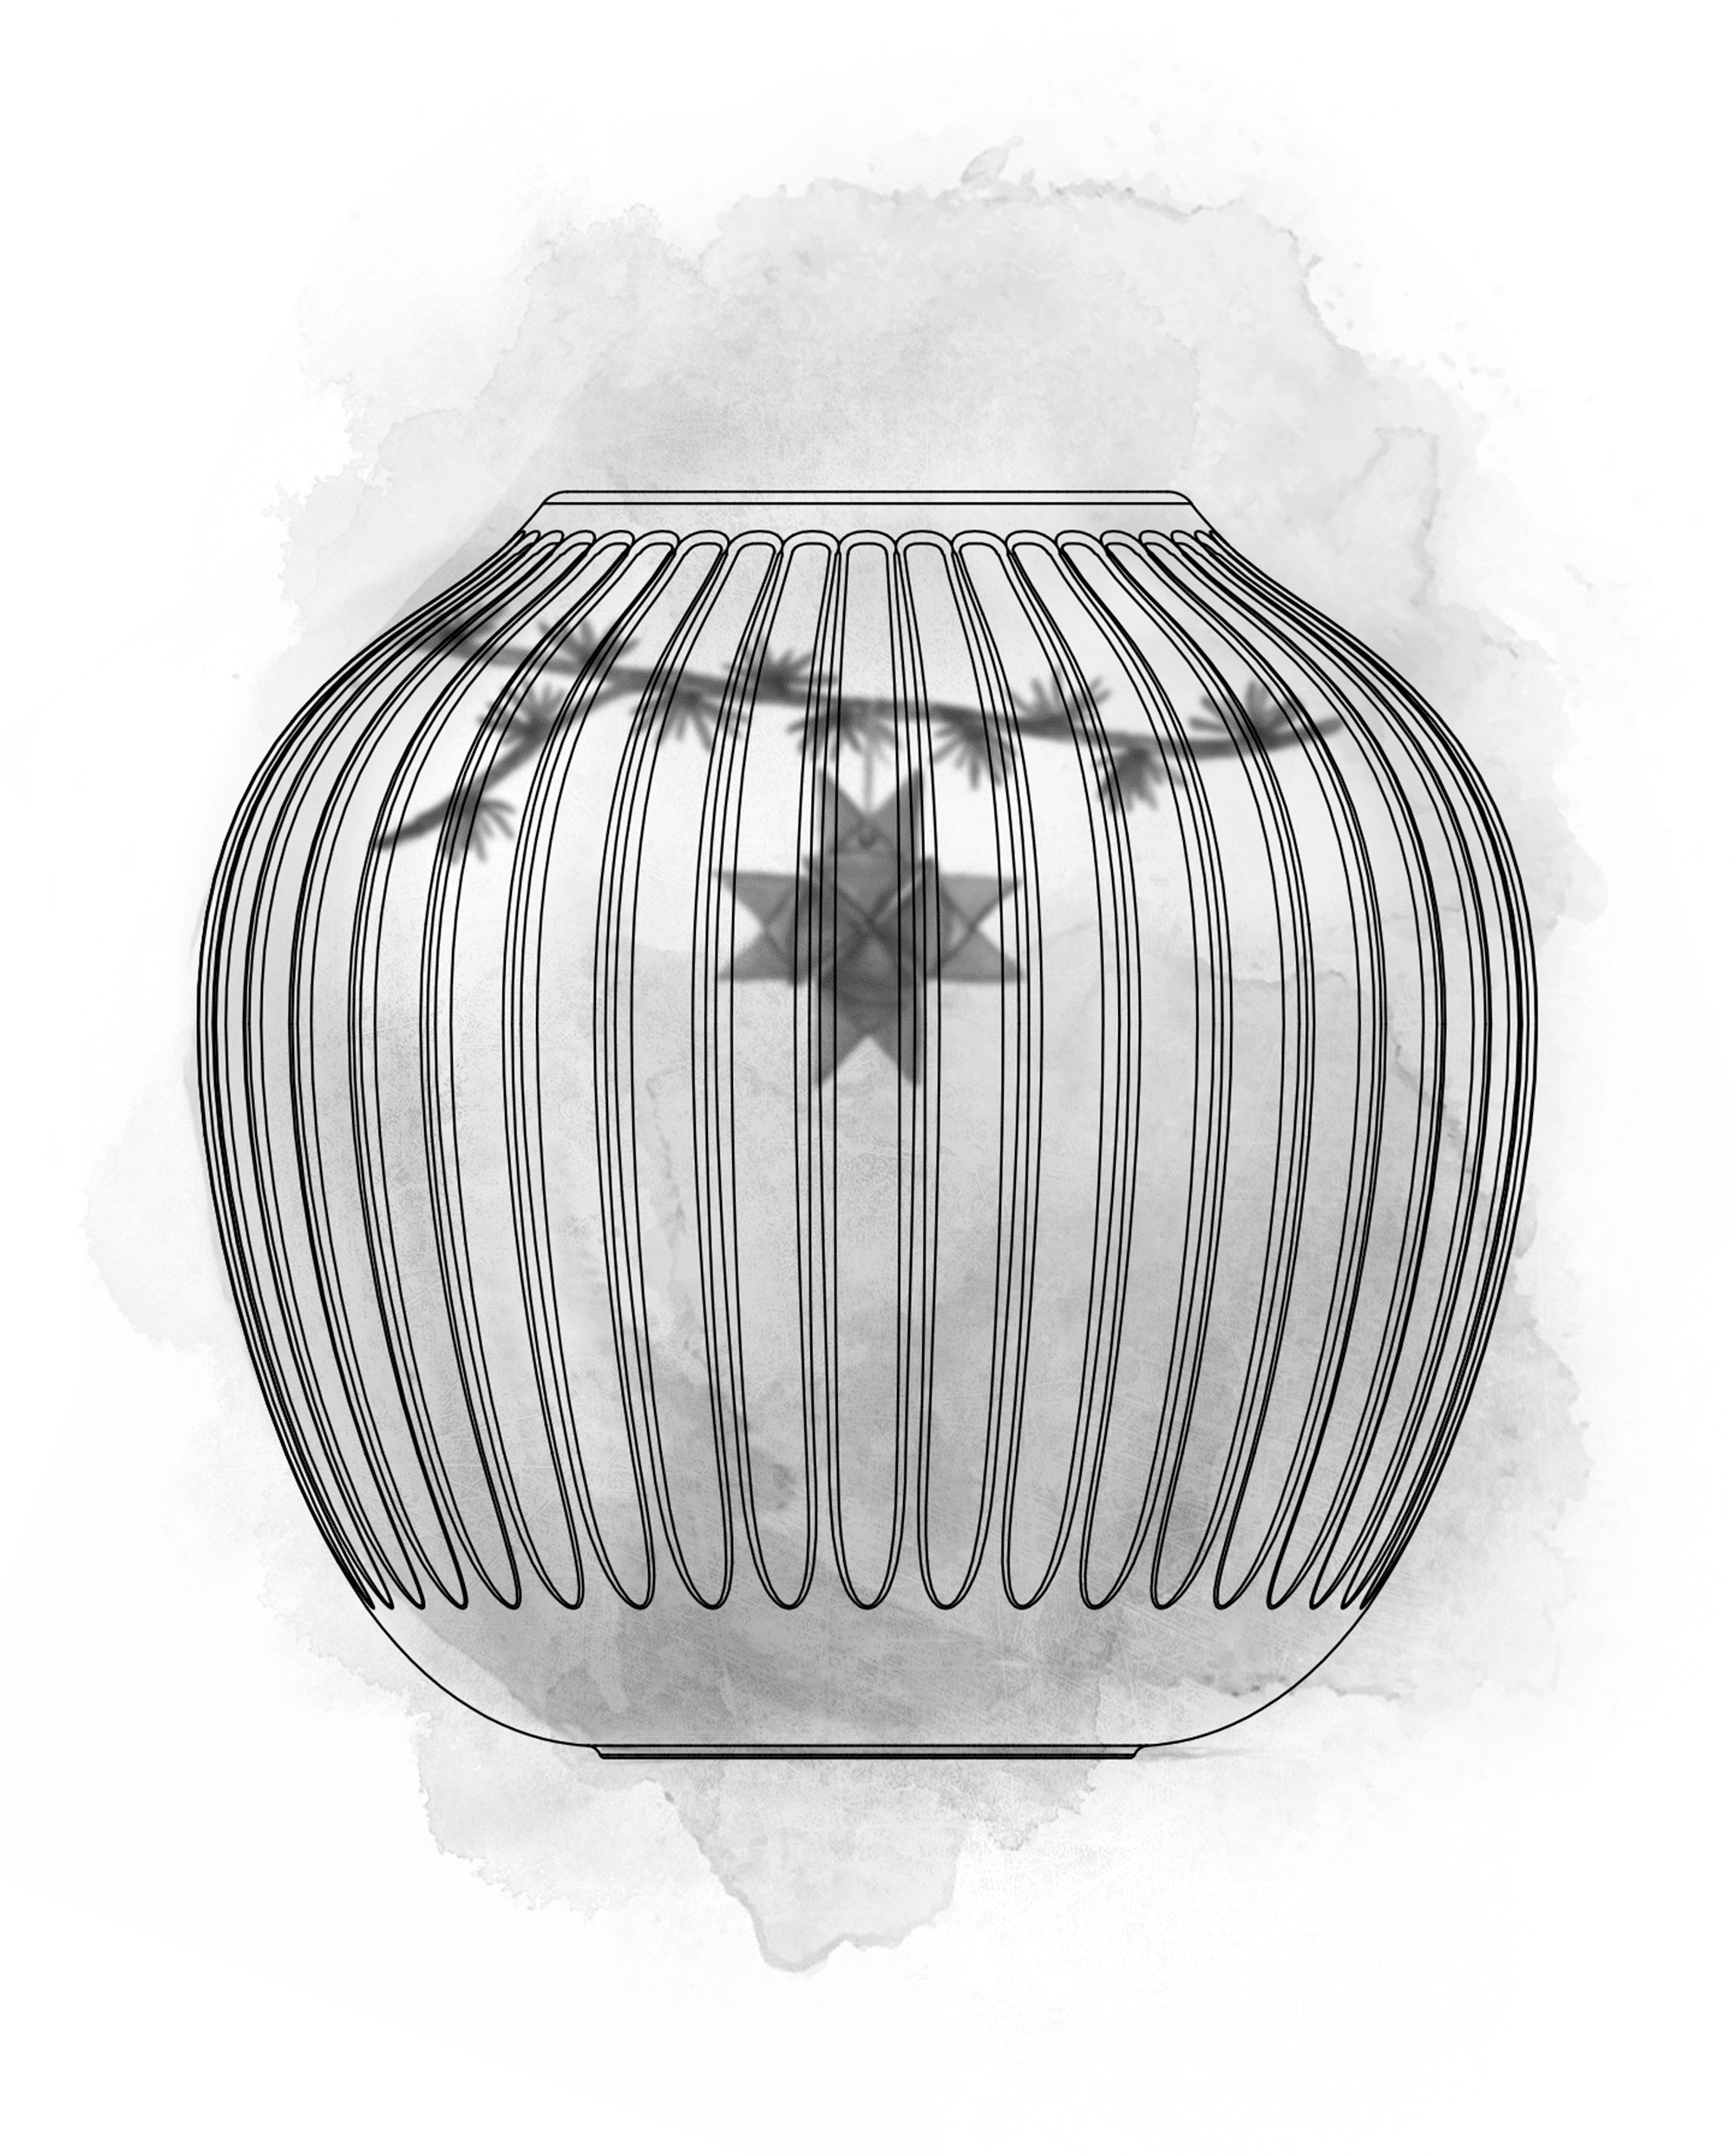 Vase H13 cm